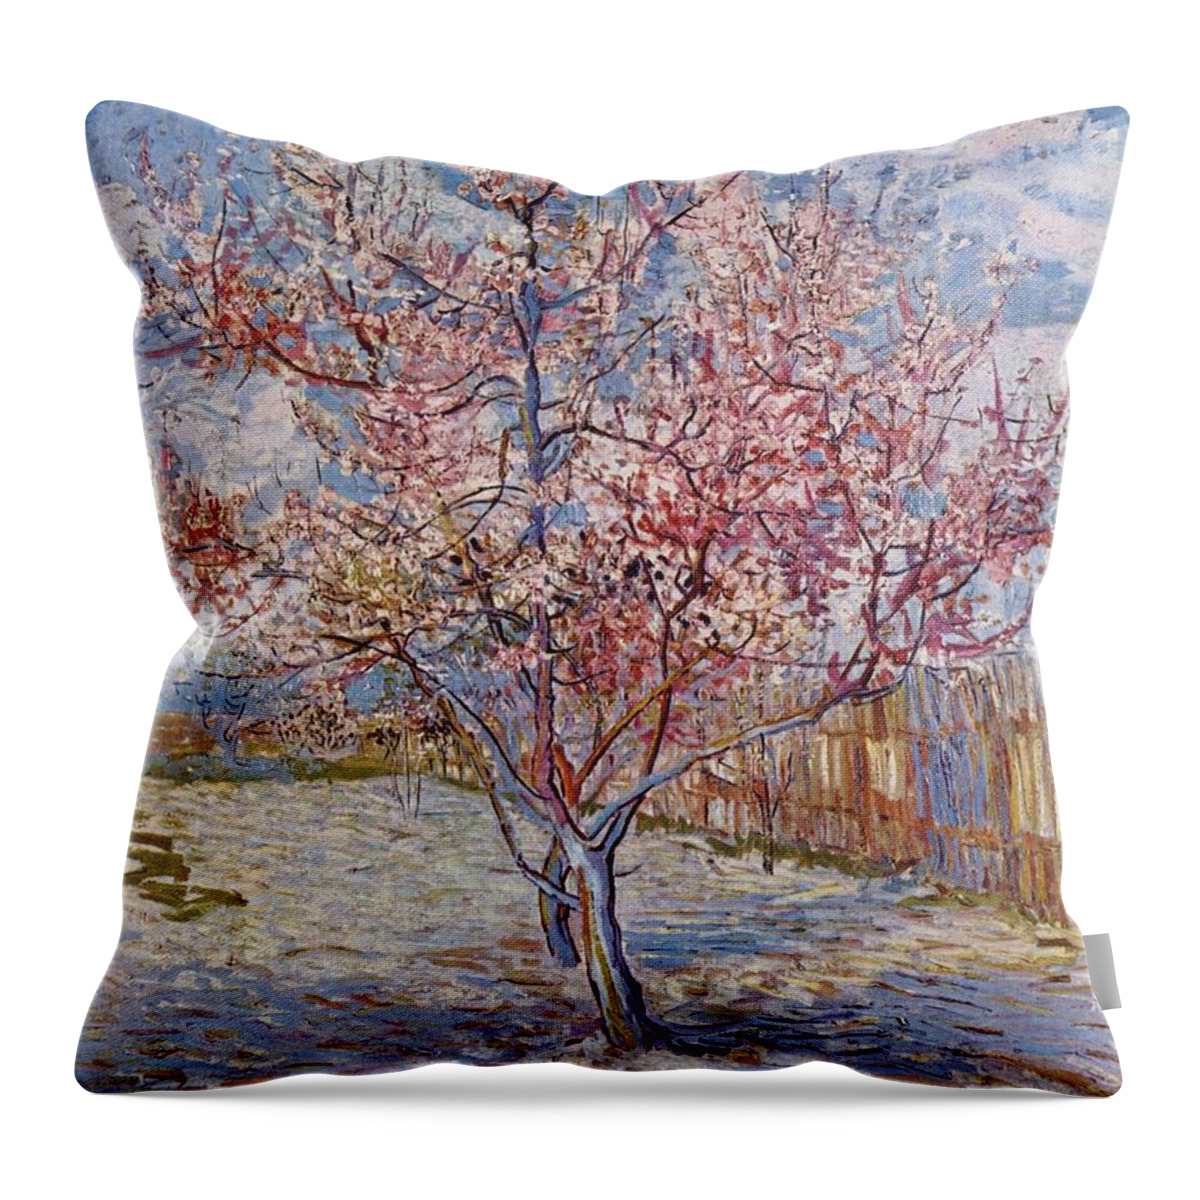 Vincent Van Gogh Throw Pillow featuring the painting Souvenir de Mauve by MotionAge Designs